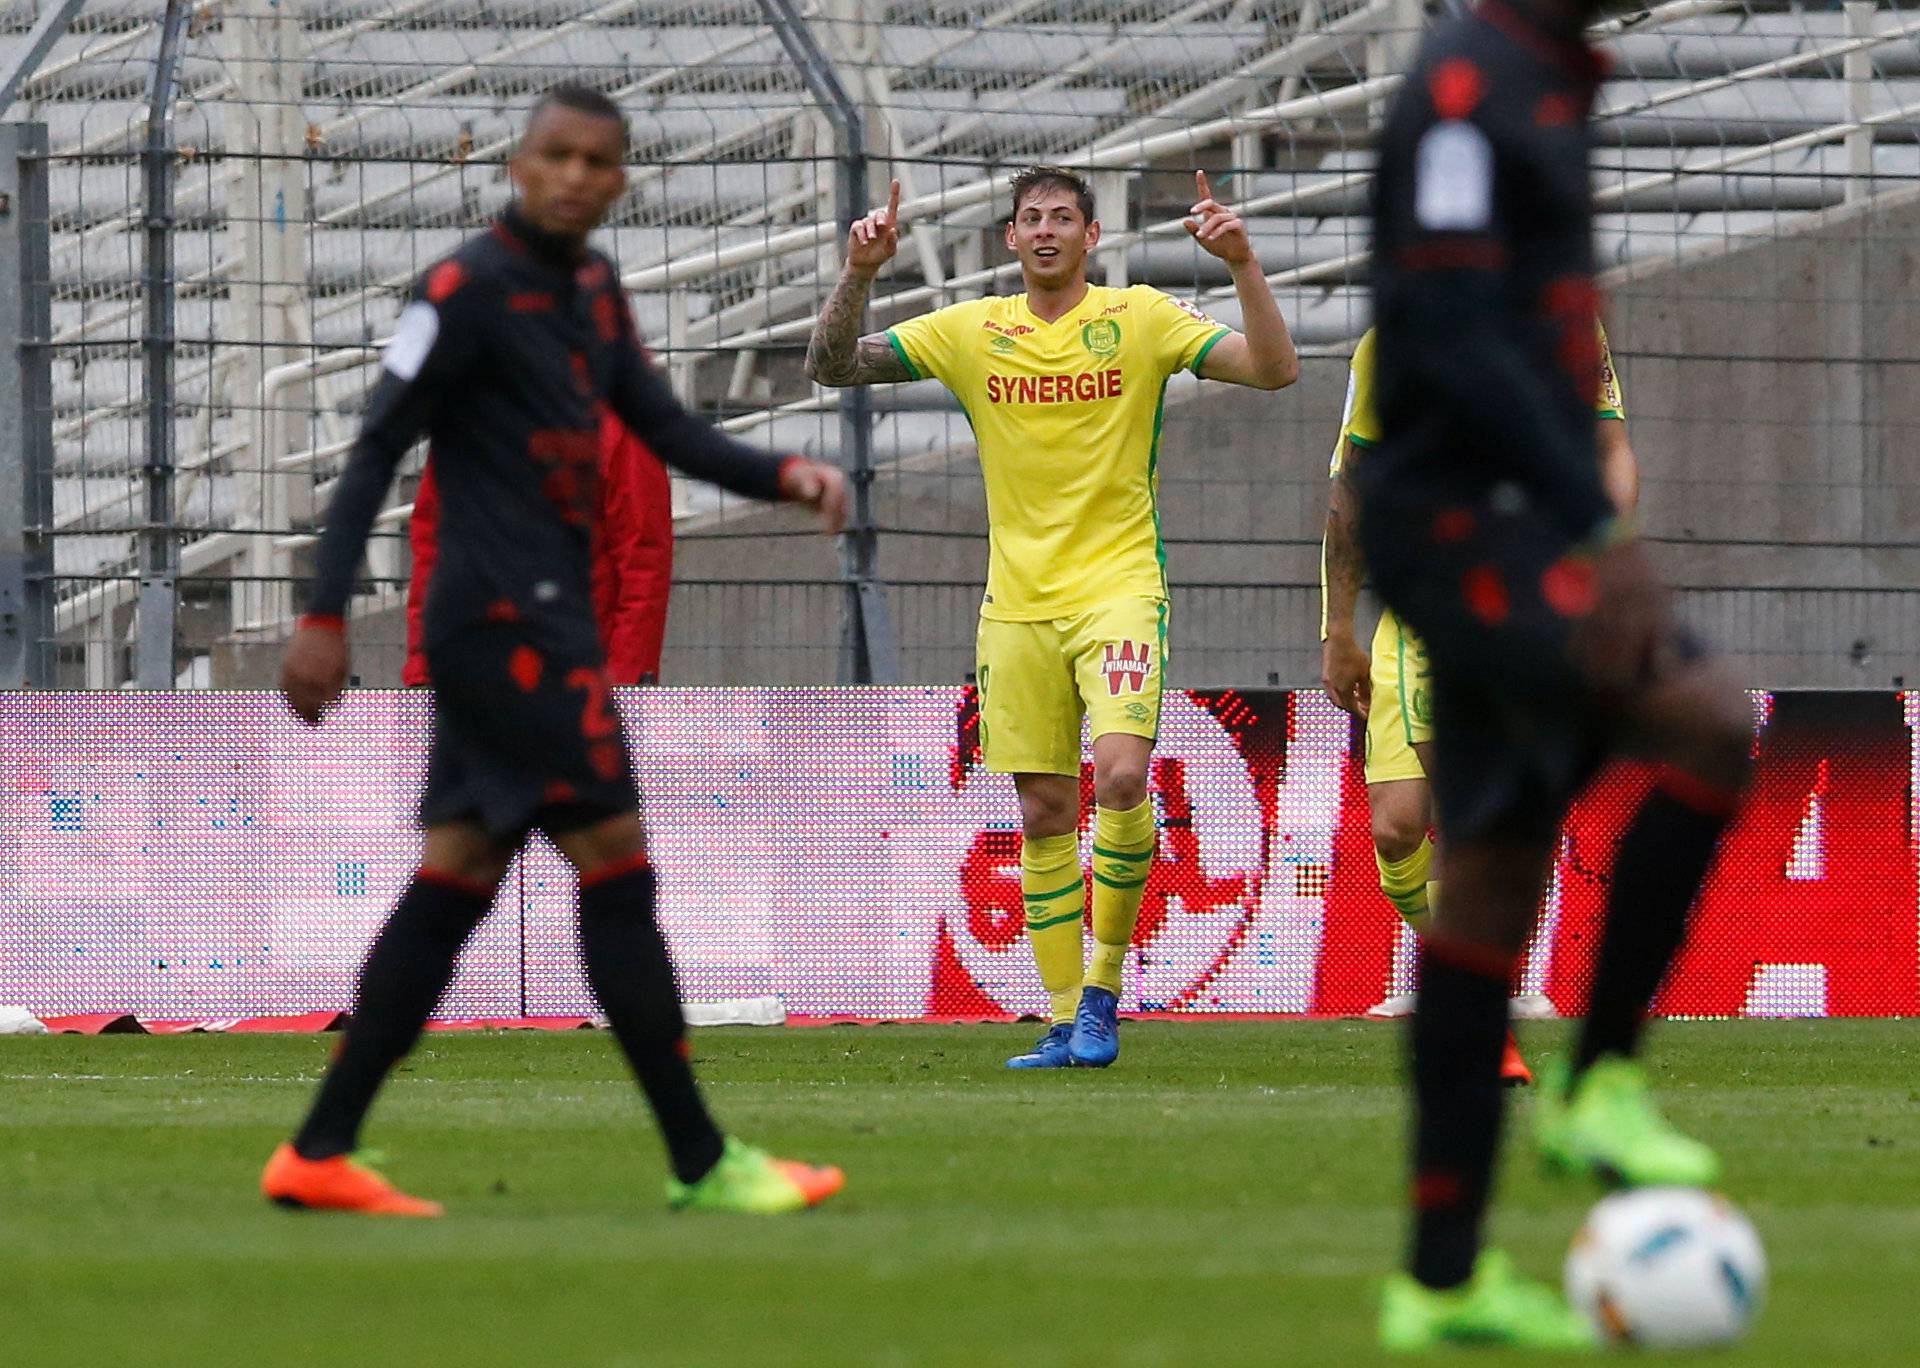 Nantes' Emiliano Sala celebrates after scoring